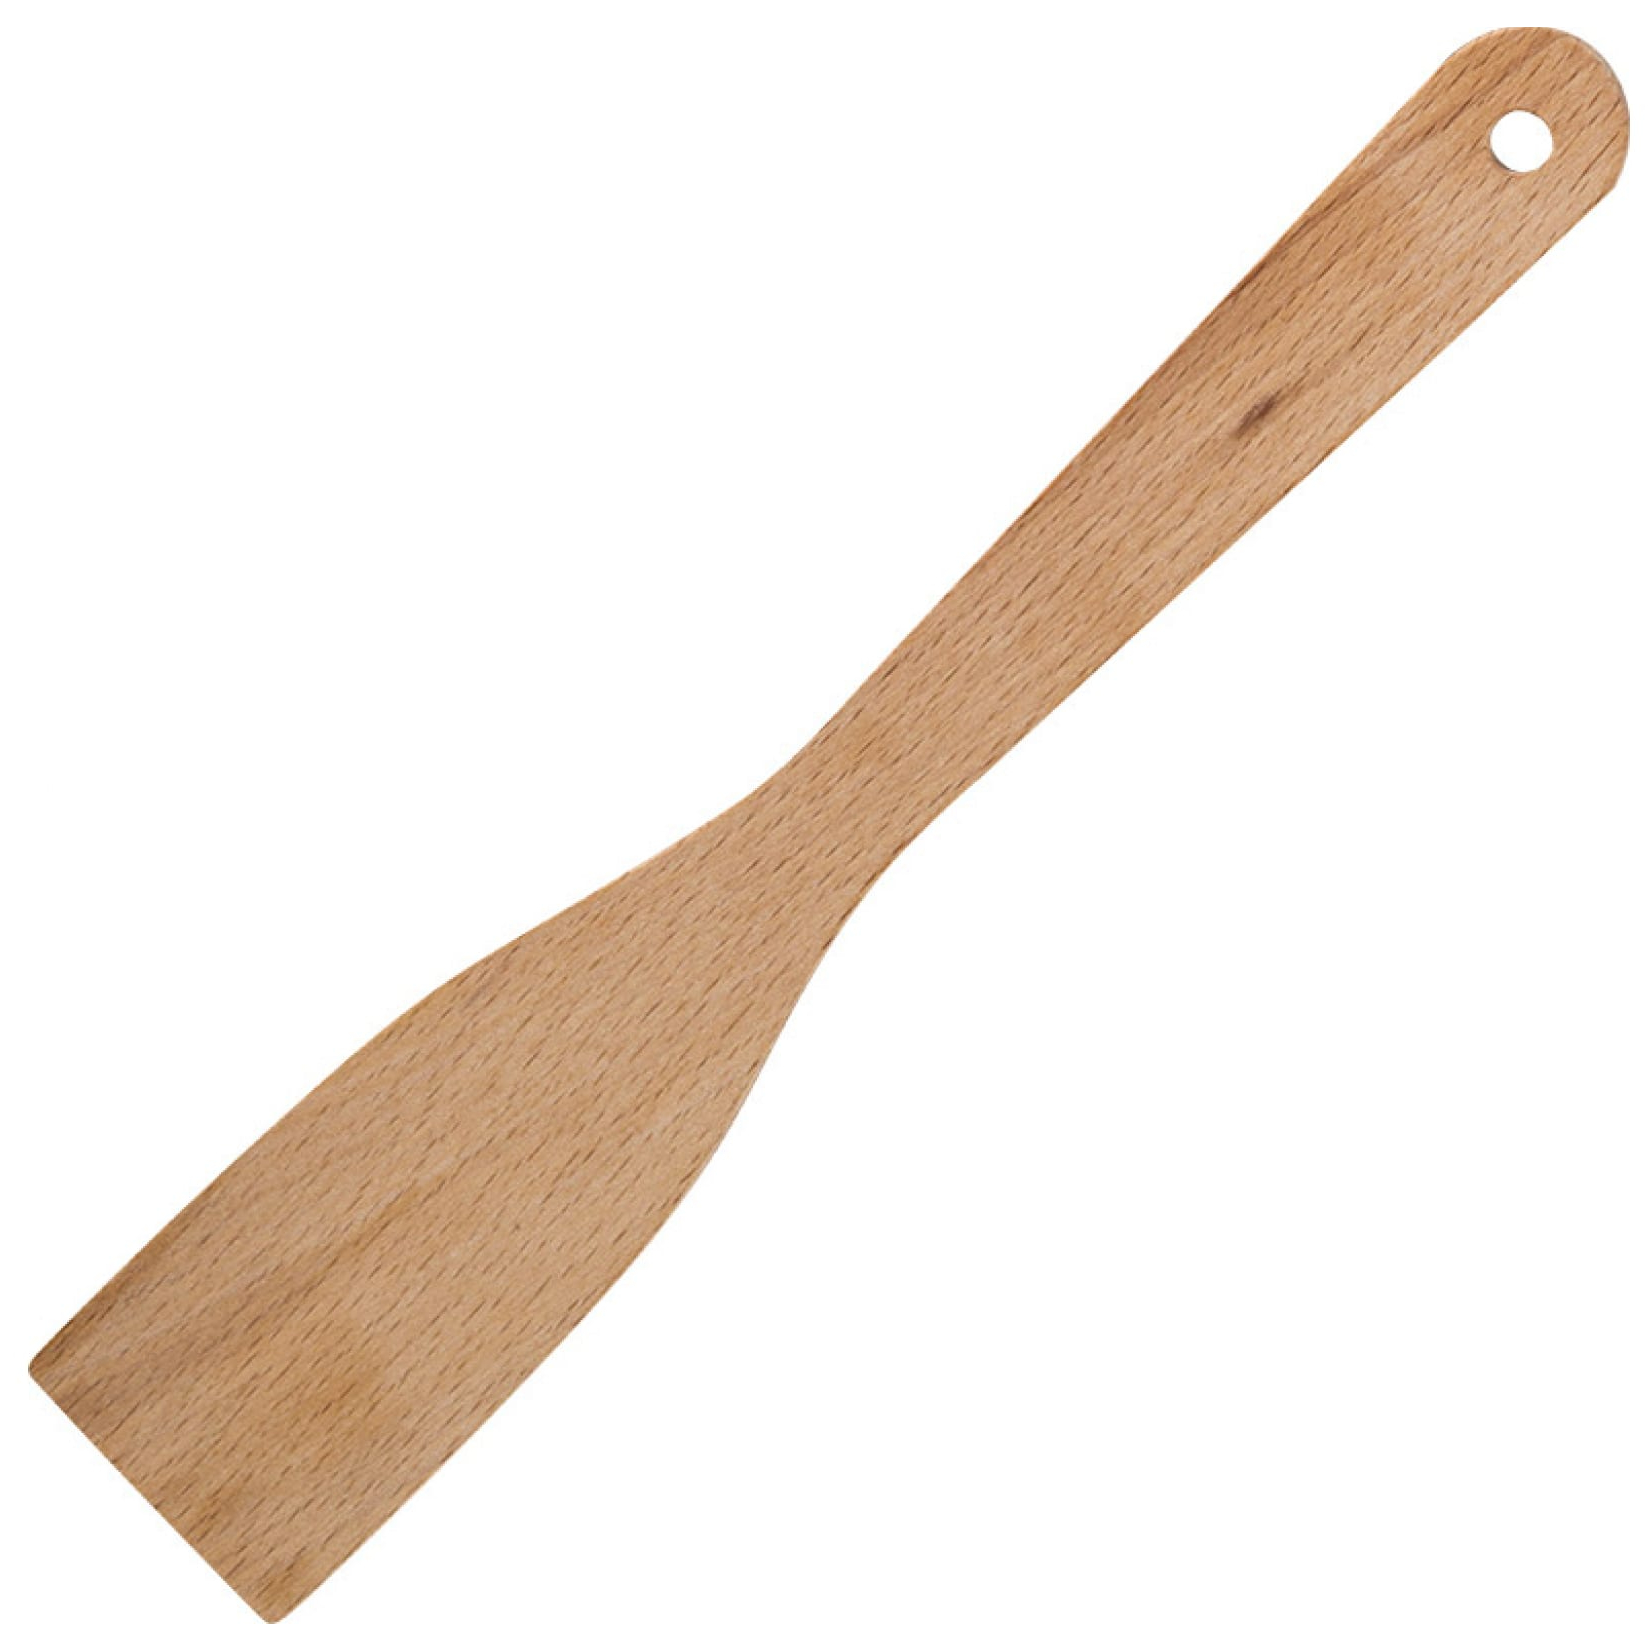 Кухонная лопатка купить. Лопатка бамбук набор 3шт (28+15см) 10147. Bnb2227 лопатка бамбук, 30х6см. Лопатка Гринвуд 300мм бамбук. Лопатка кухонная 30см, бамбук.